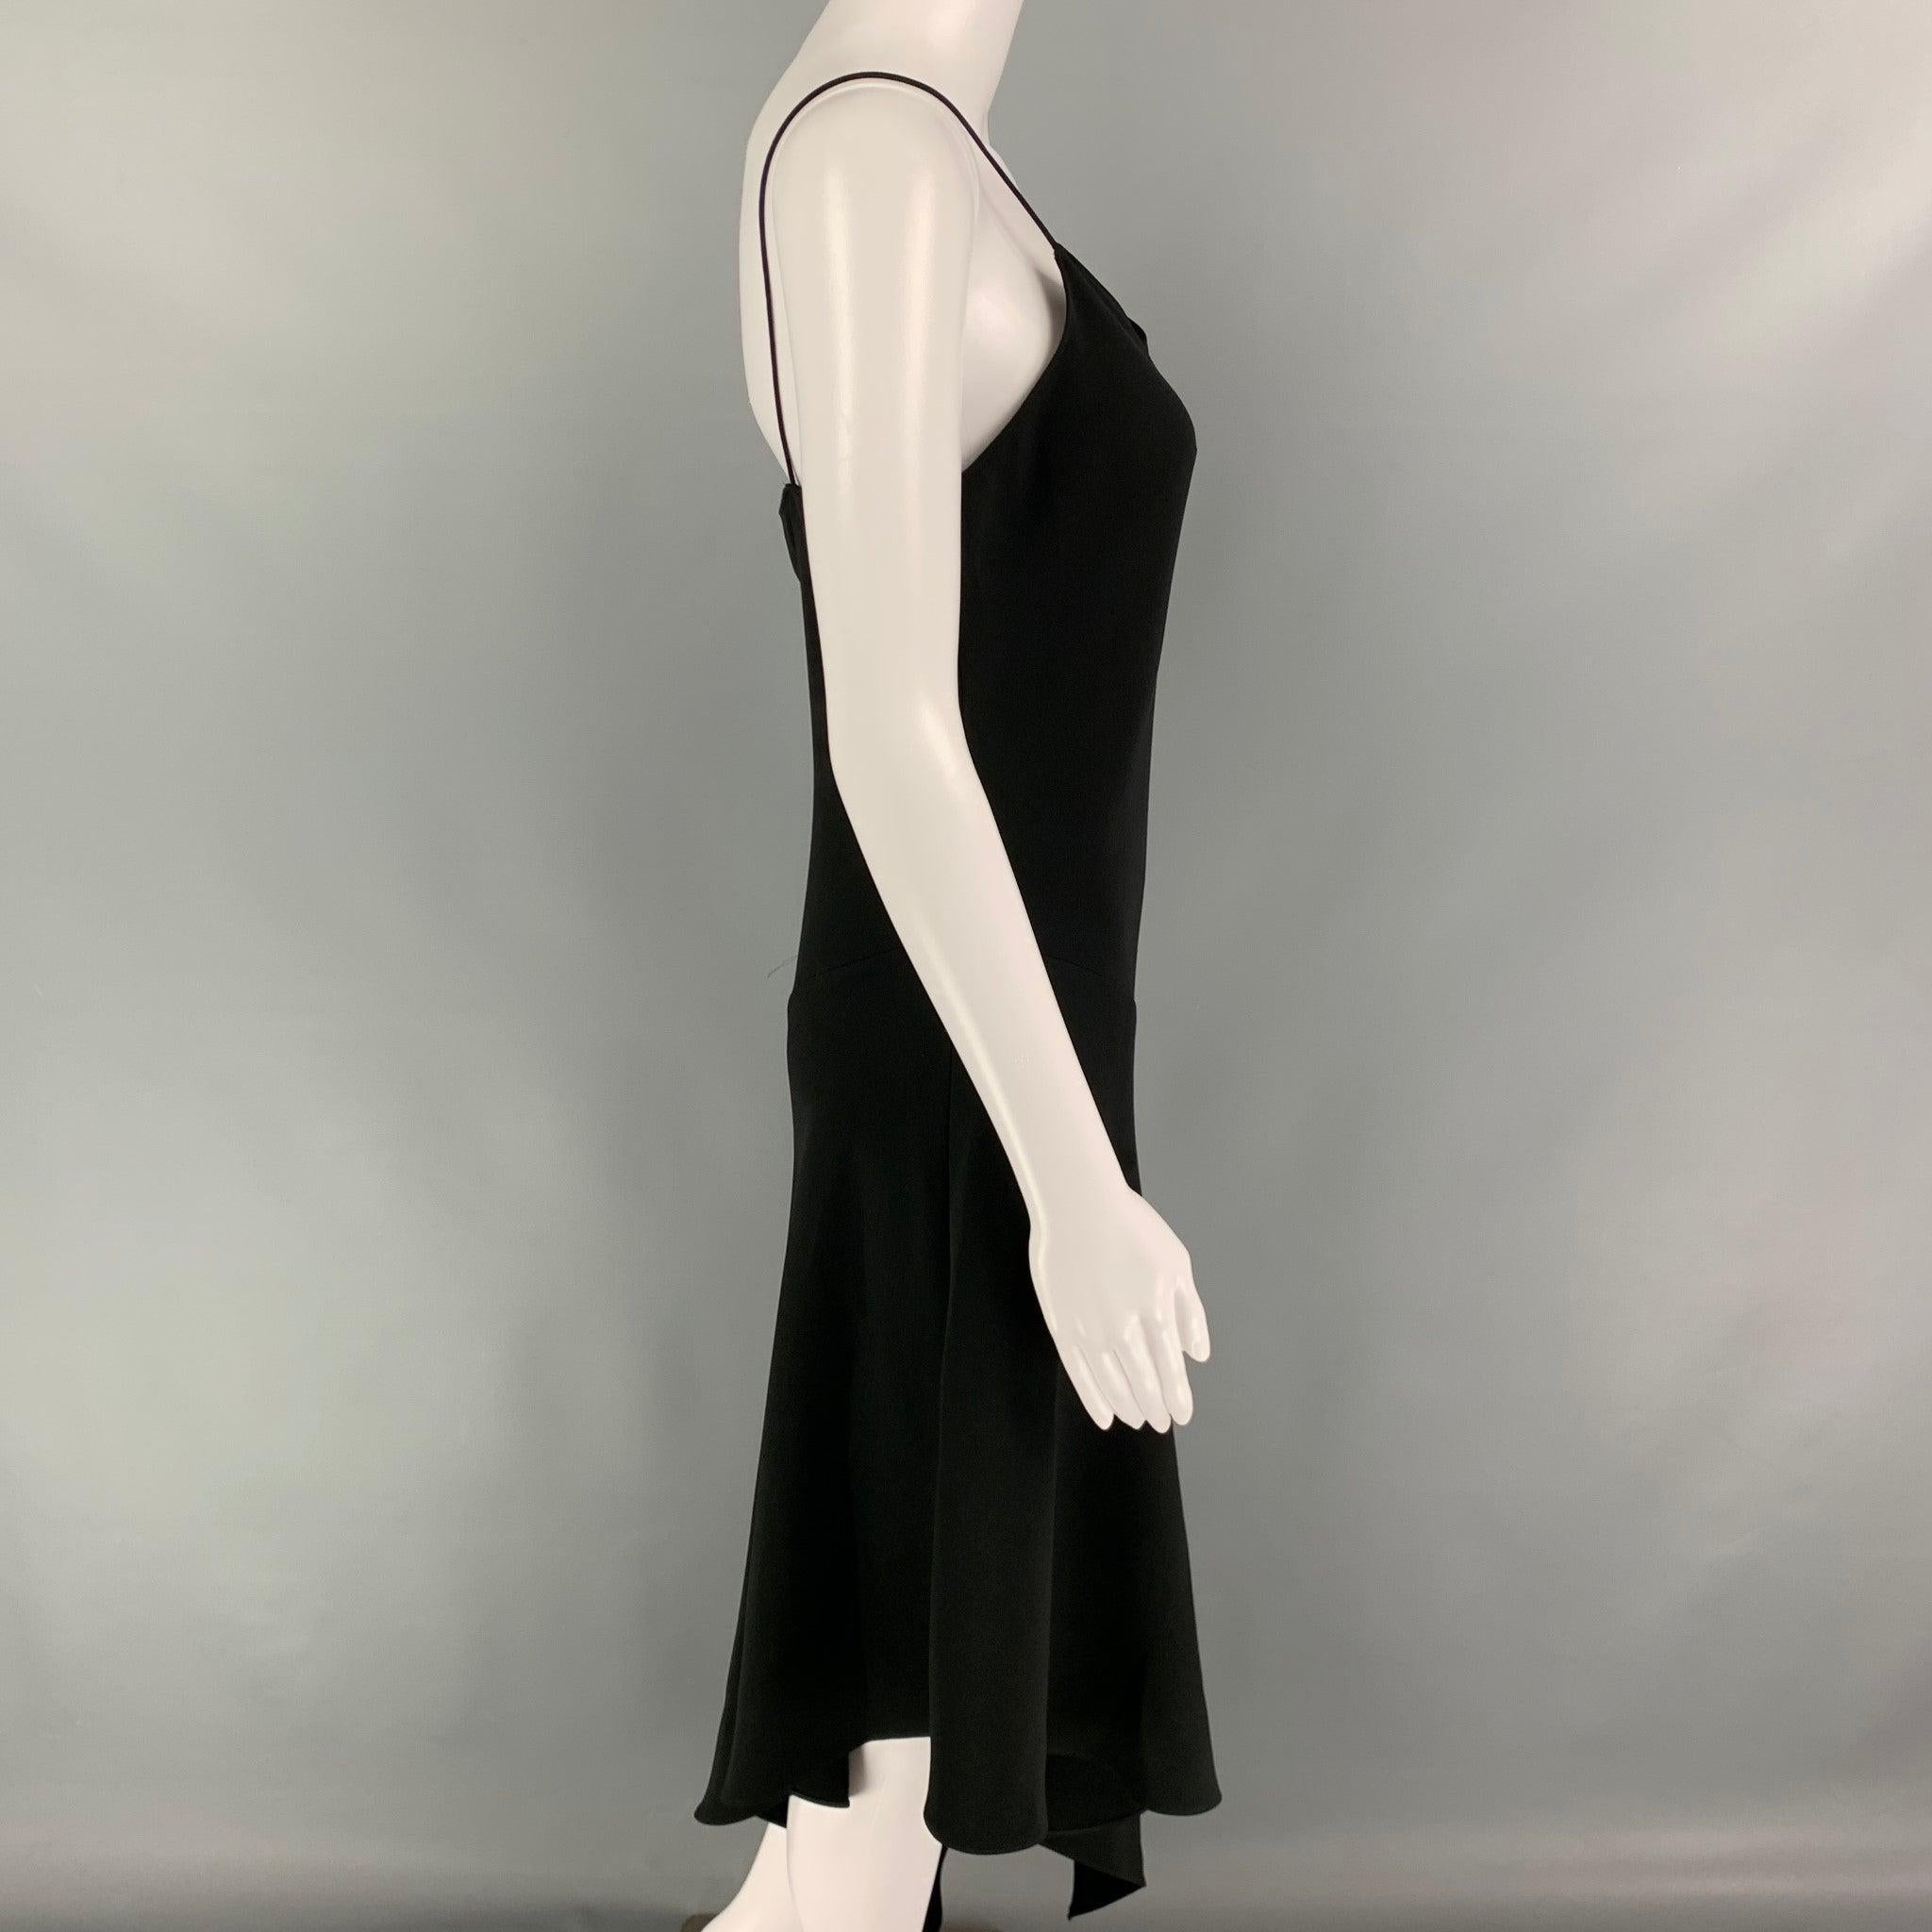 Das CELINE Kleid aus schwarzer Stretch-Seide hat ein asymmetrisches Design, Spaghettiträger und ist zum Hineinschlüpfen.
Ausgezeichnet
Gebrauchtes Zustand. 

Markiert:  42 

Abmessungen: 
 Büste: 32 Zoll Taille: 26 Zoll Hüfte:
32 Zoll Länge: 47 Zoll